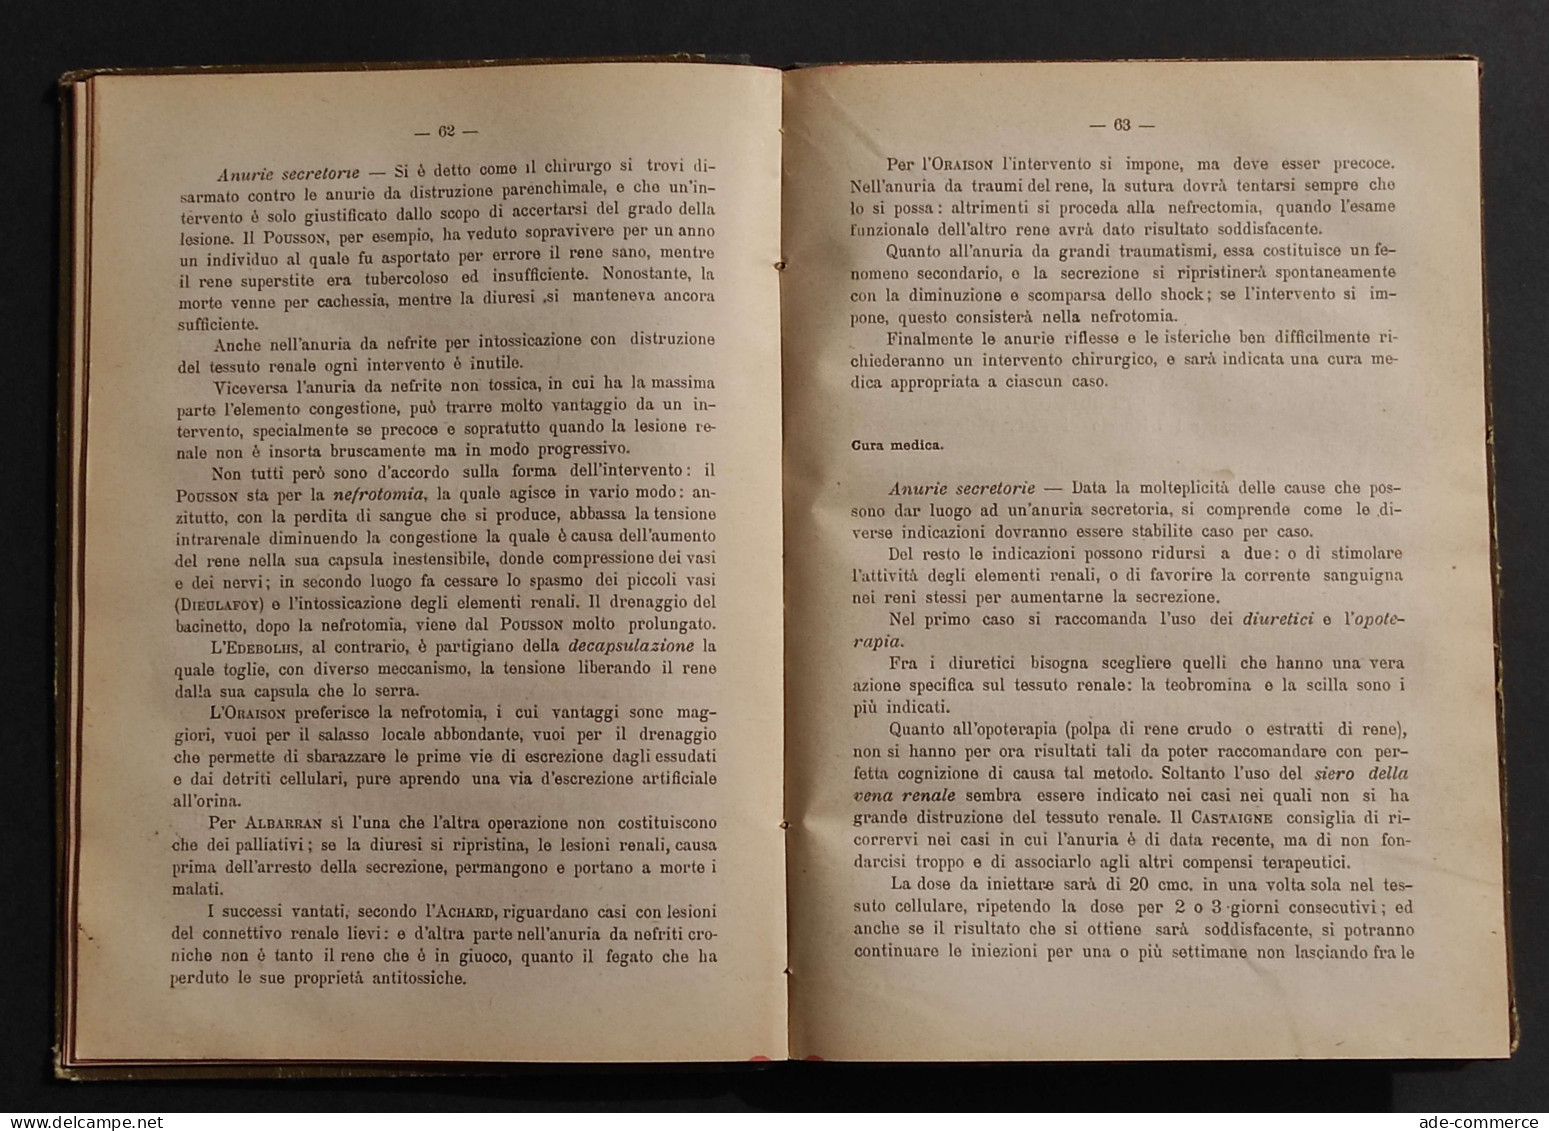 Il Progresso Terapeutico - Annuario Scientifico - A. Gagliardi - 1913 - Medizin, Psychologie